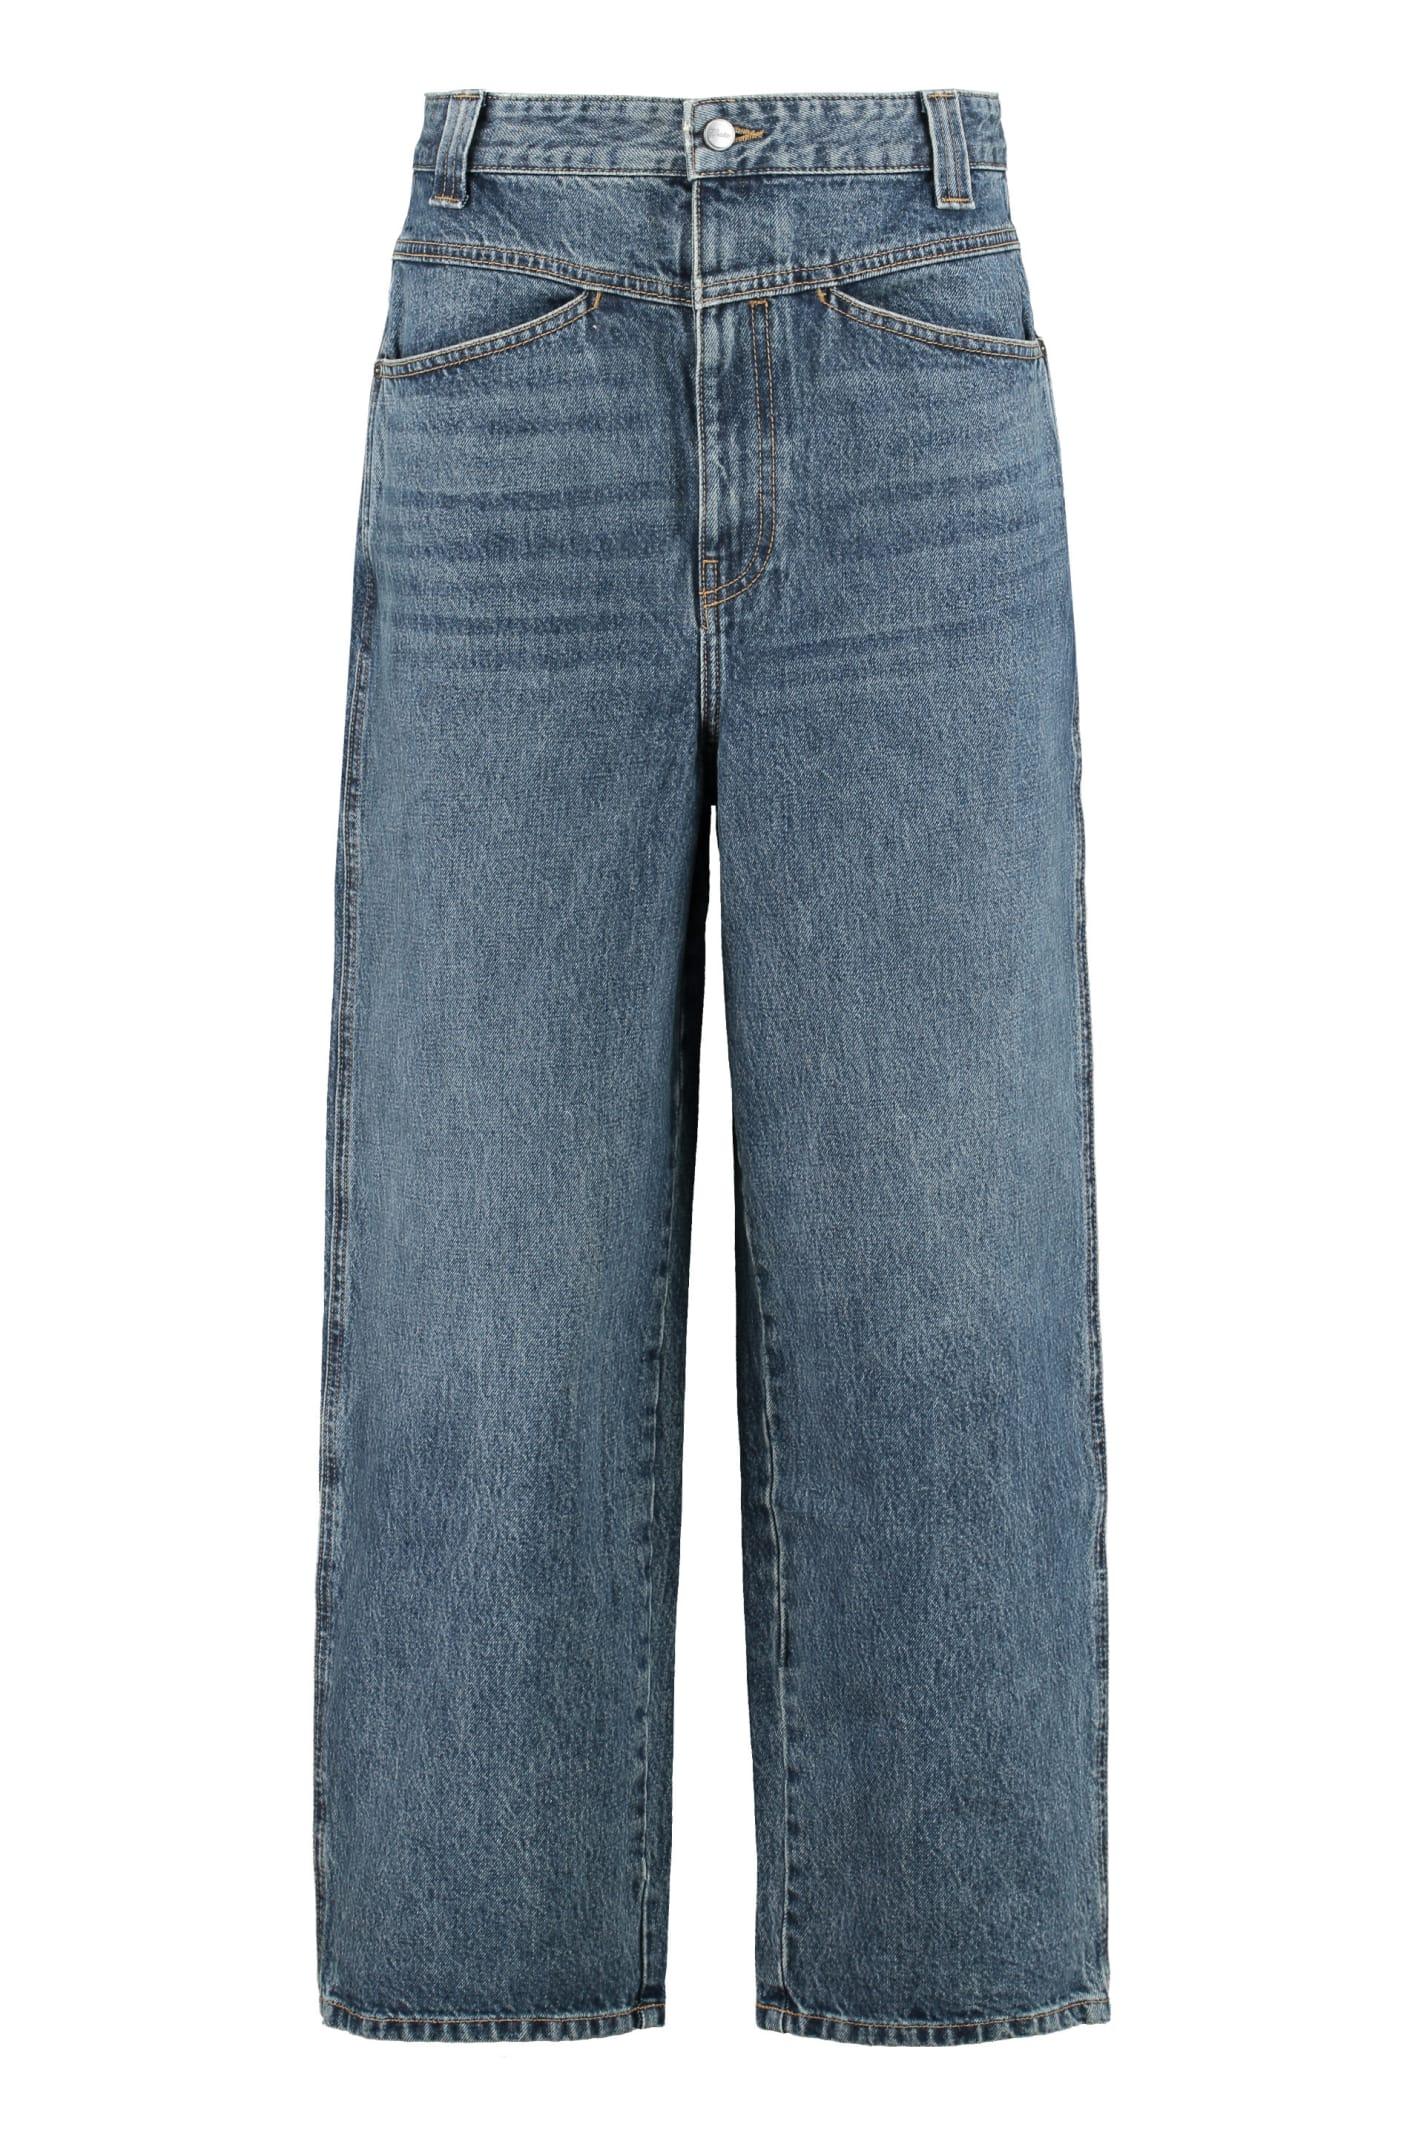 Khaite The Preen Jean Wide-leg Jeans in Blue | Lyst